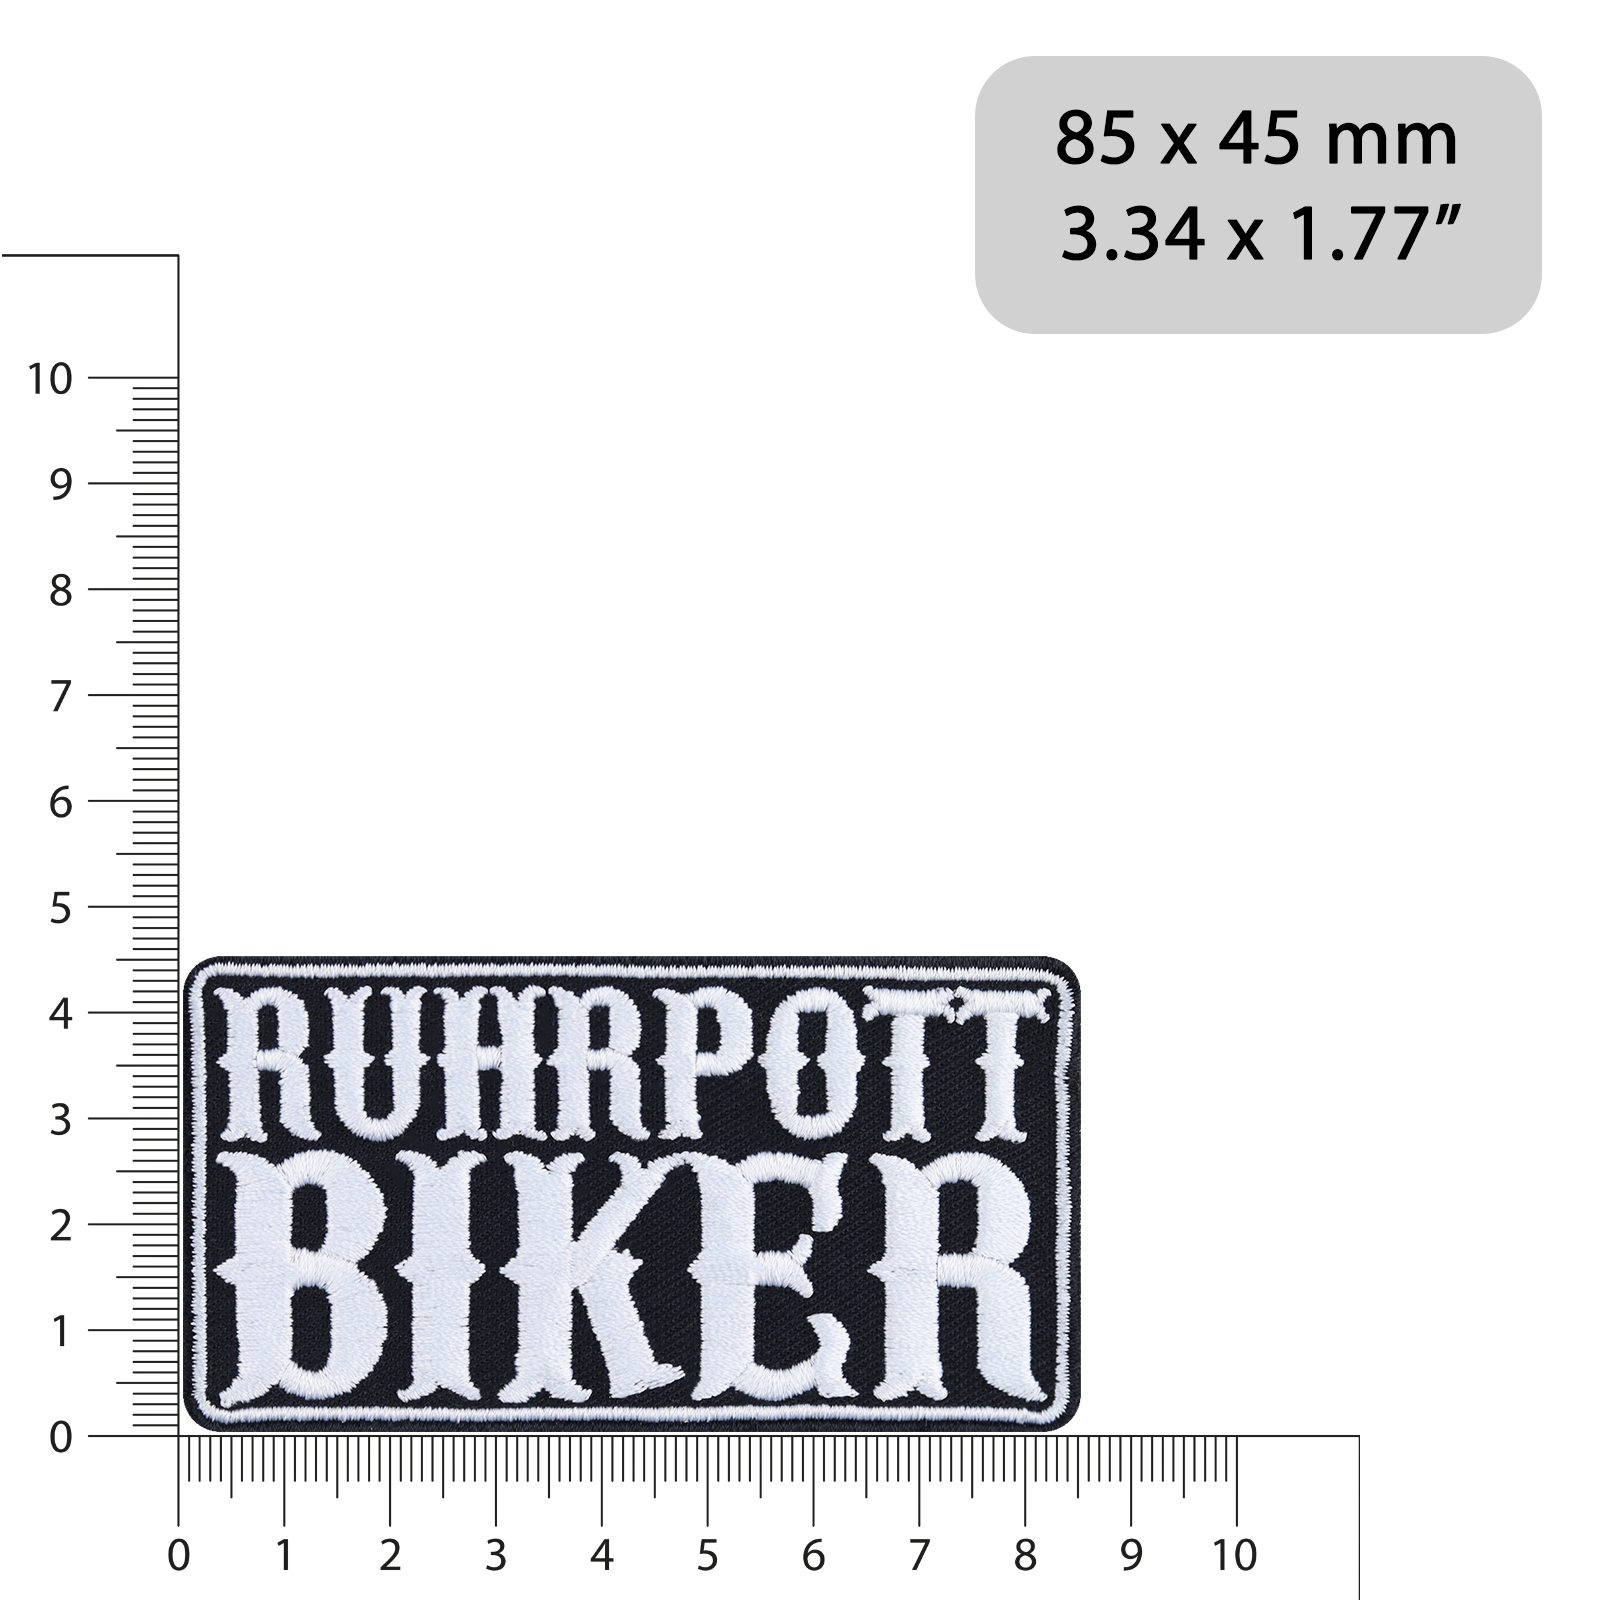 Ruhrpott Biker - Patch